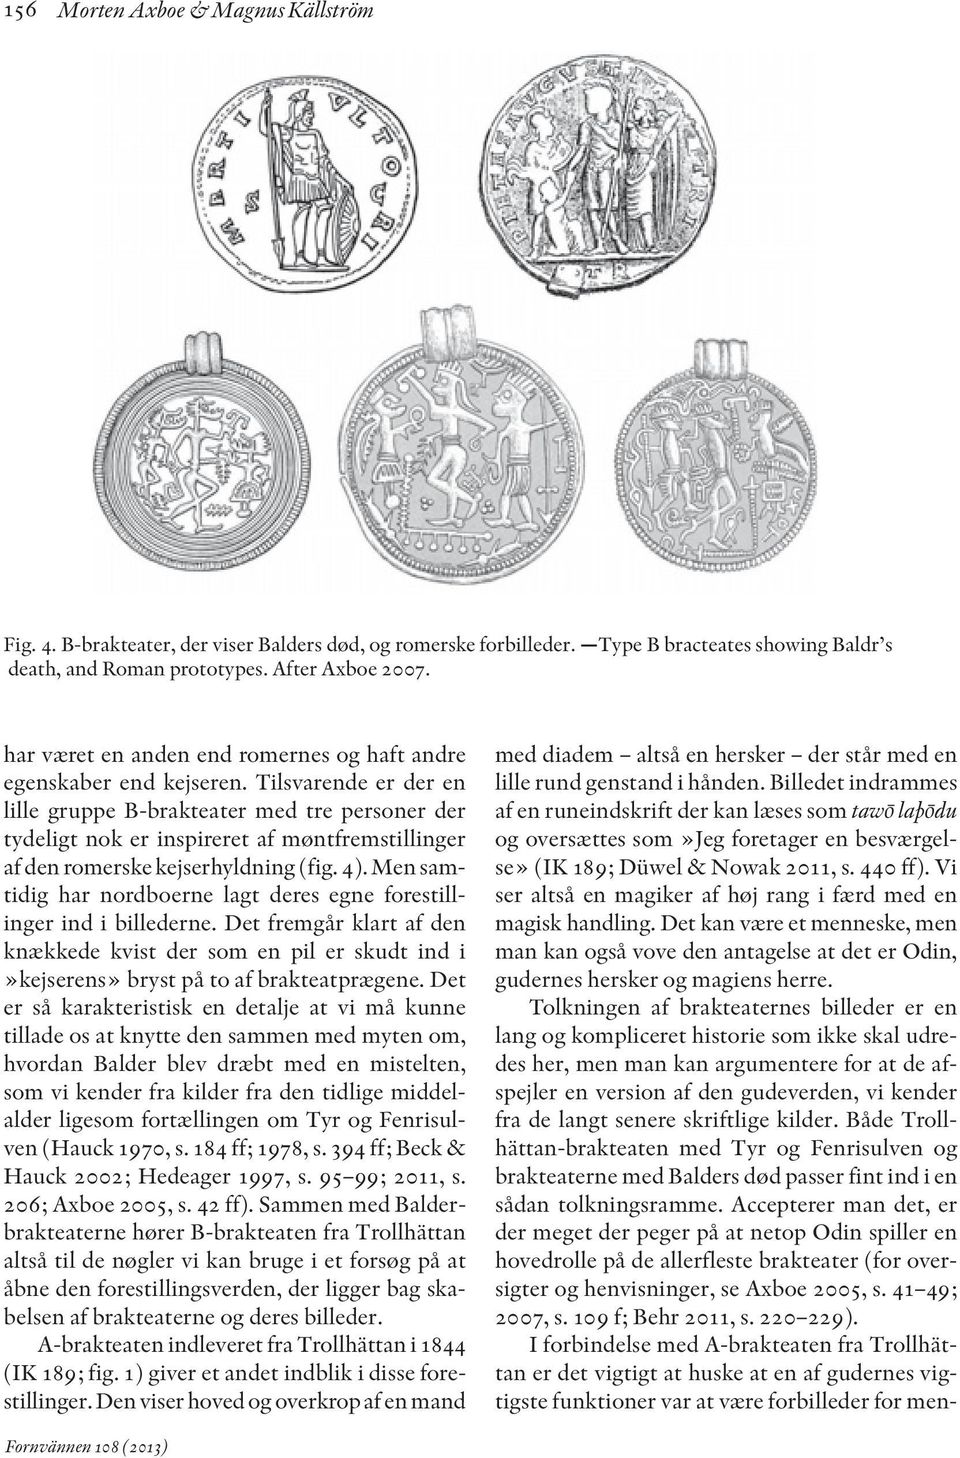 Tilsvarende er der en lille gruppe B-brakteater med tre personer der tydeligt nok er inspireret af møntfremstillinger af den romerske kejserhyldning (fig. 4).